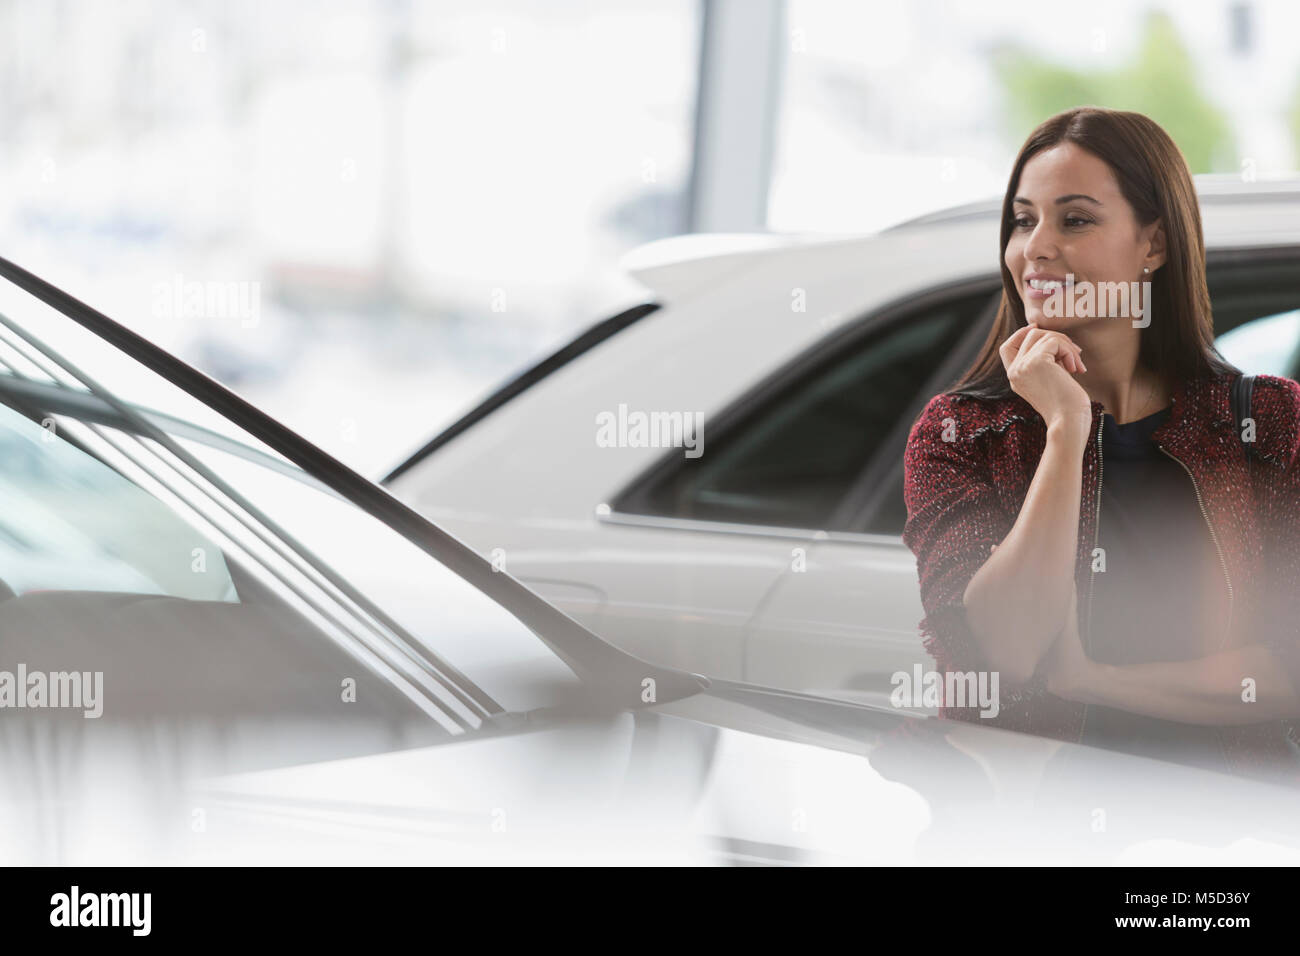 Lächelnd weibliche Kunden eyeing neues Auto in Auto Dealership showroom Stockfoto